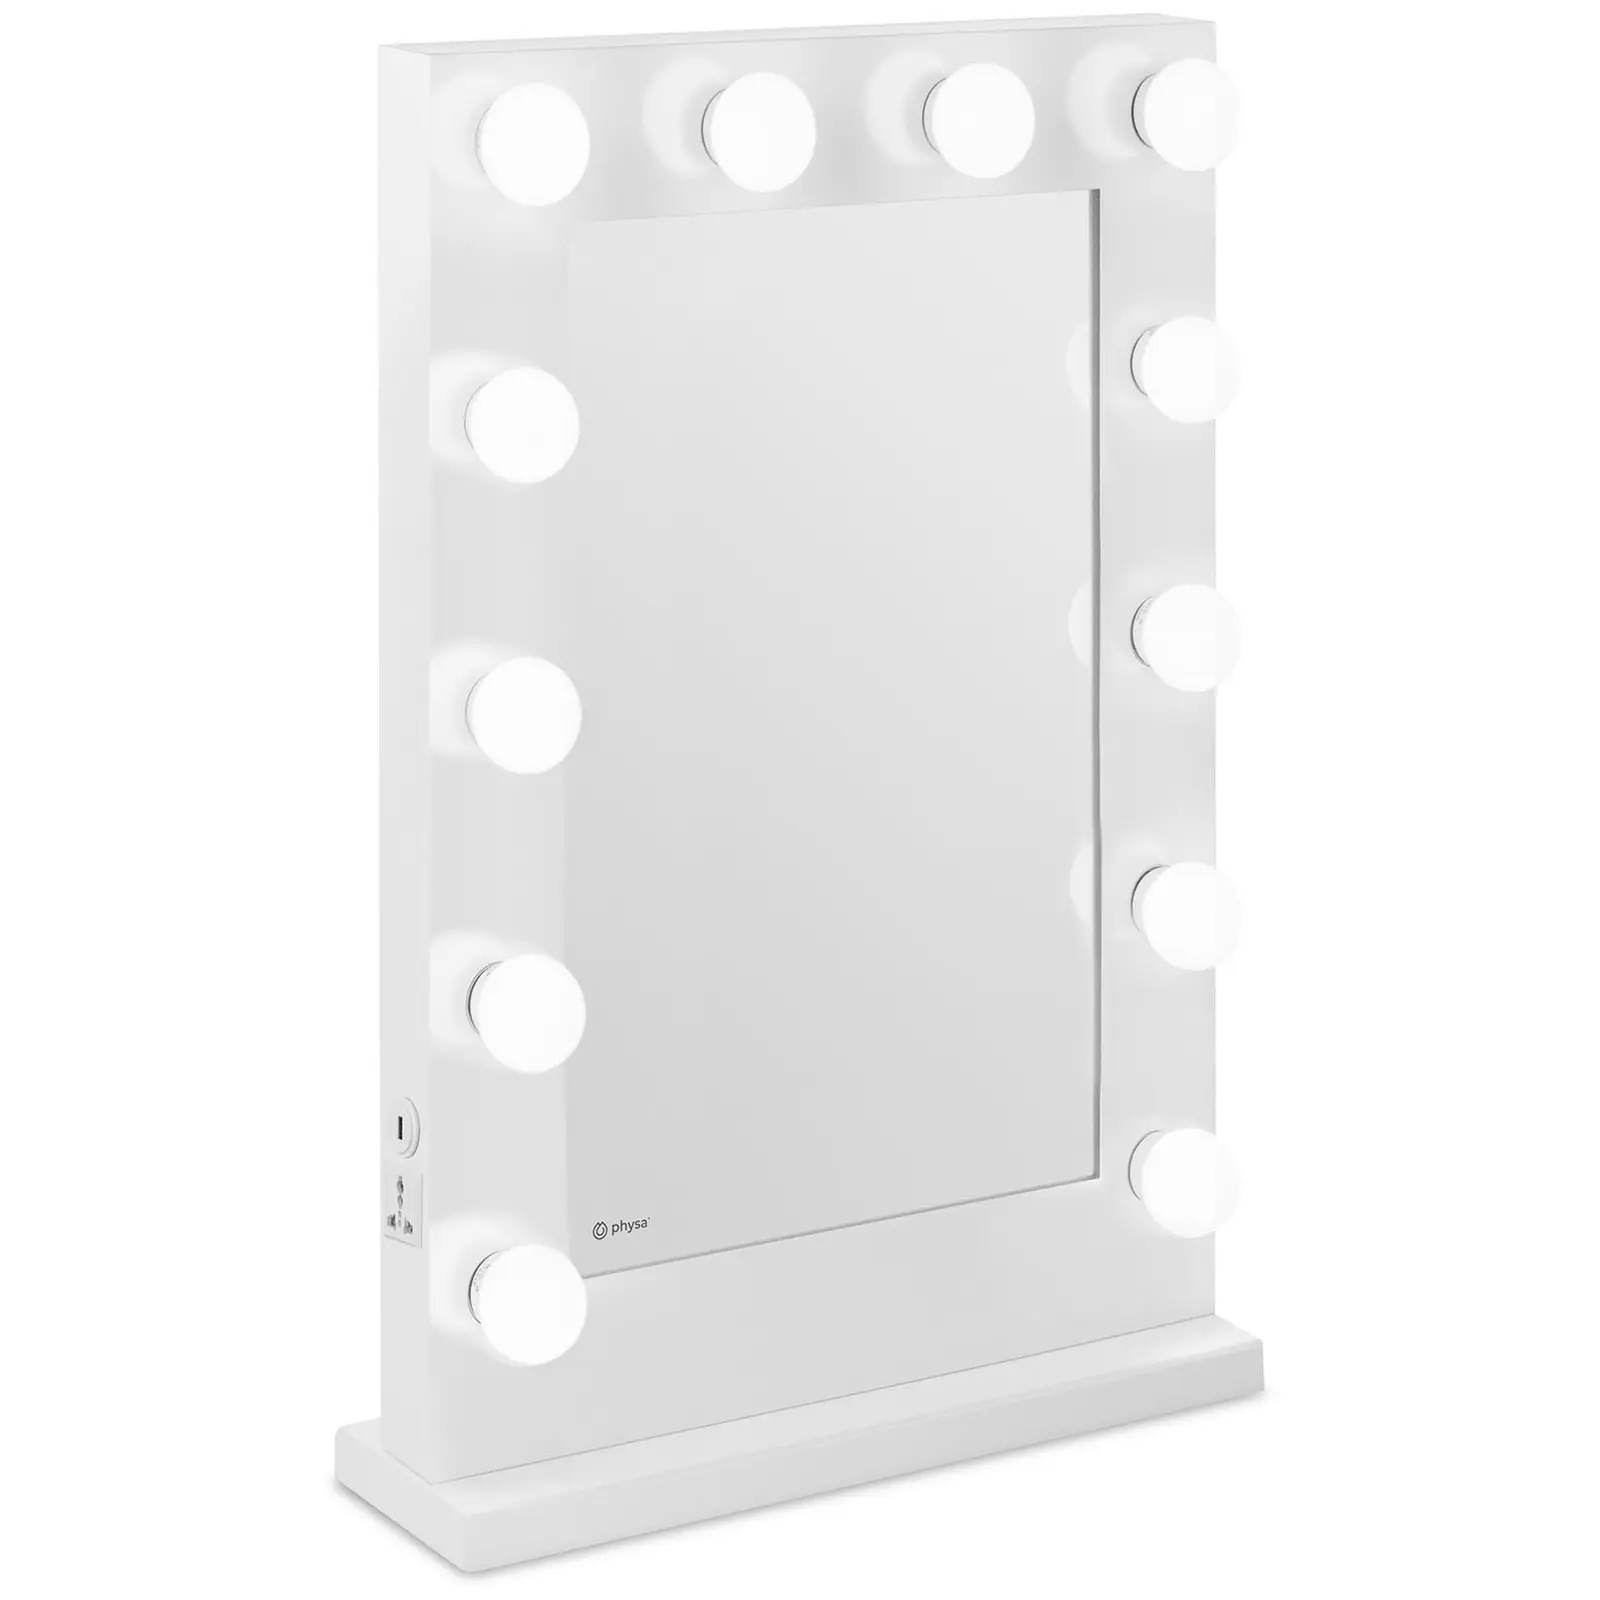 physa Specchio con Luci per Trucco Specchiera Make-Up PHY-CM-11 WHITE Bianco, 12 LED, Rettangolare 